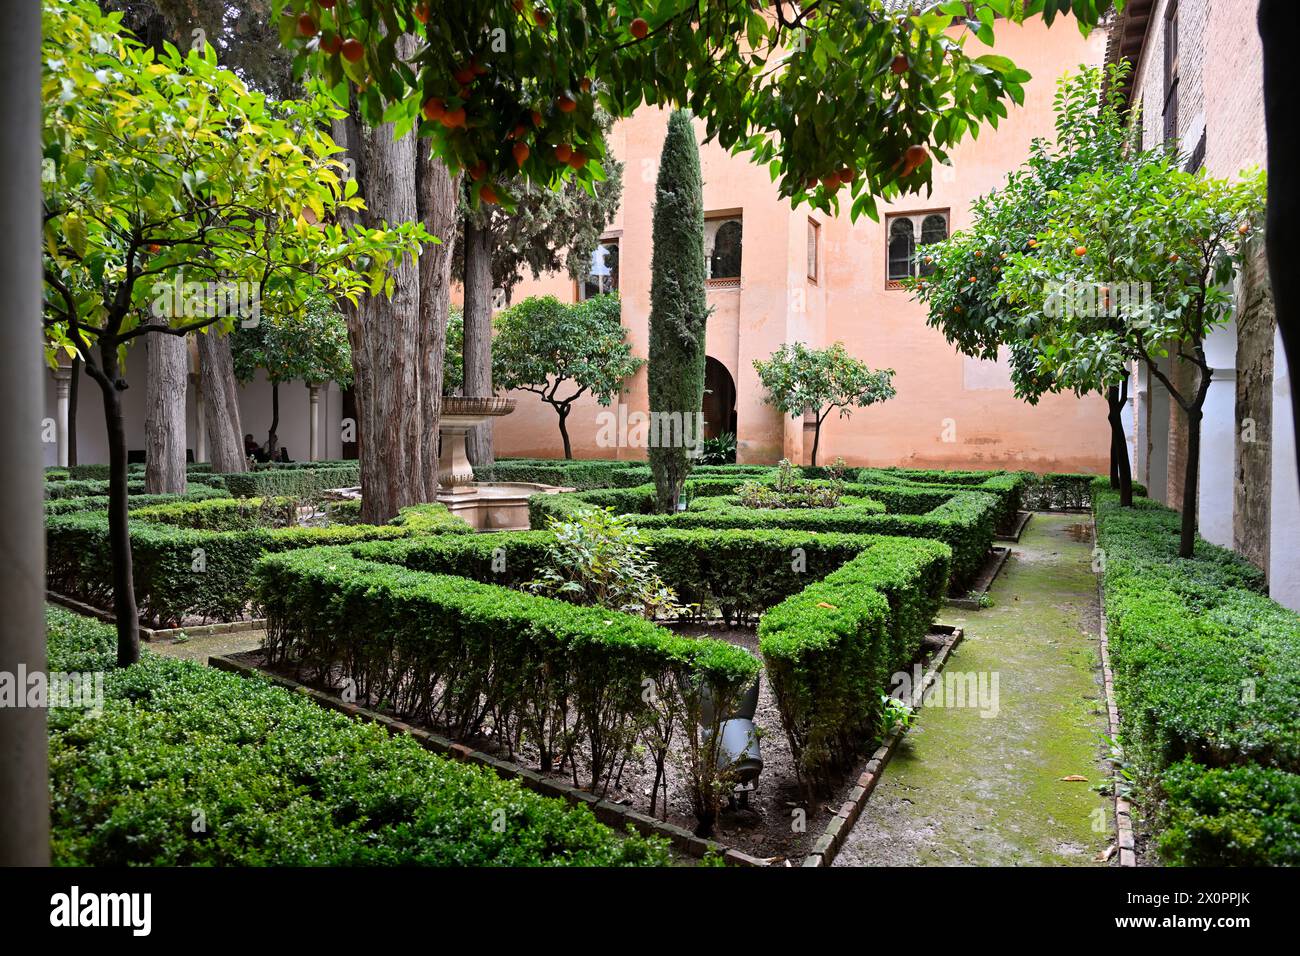 Petit jardin formel de poche avec des sentiers pédestres et des haies soigneusement taillées dans le palais de l'Alhambra, Espagne Banque D'Images